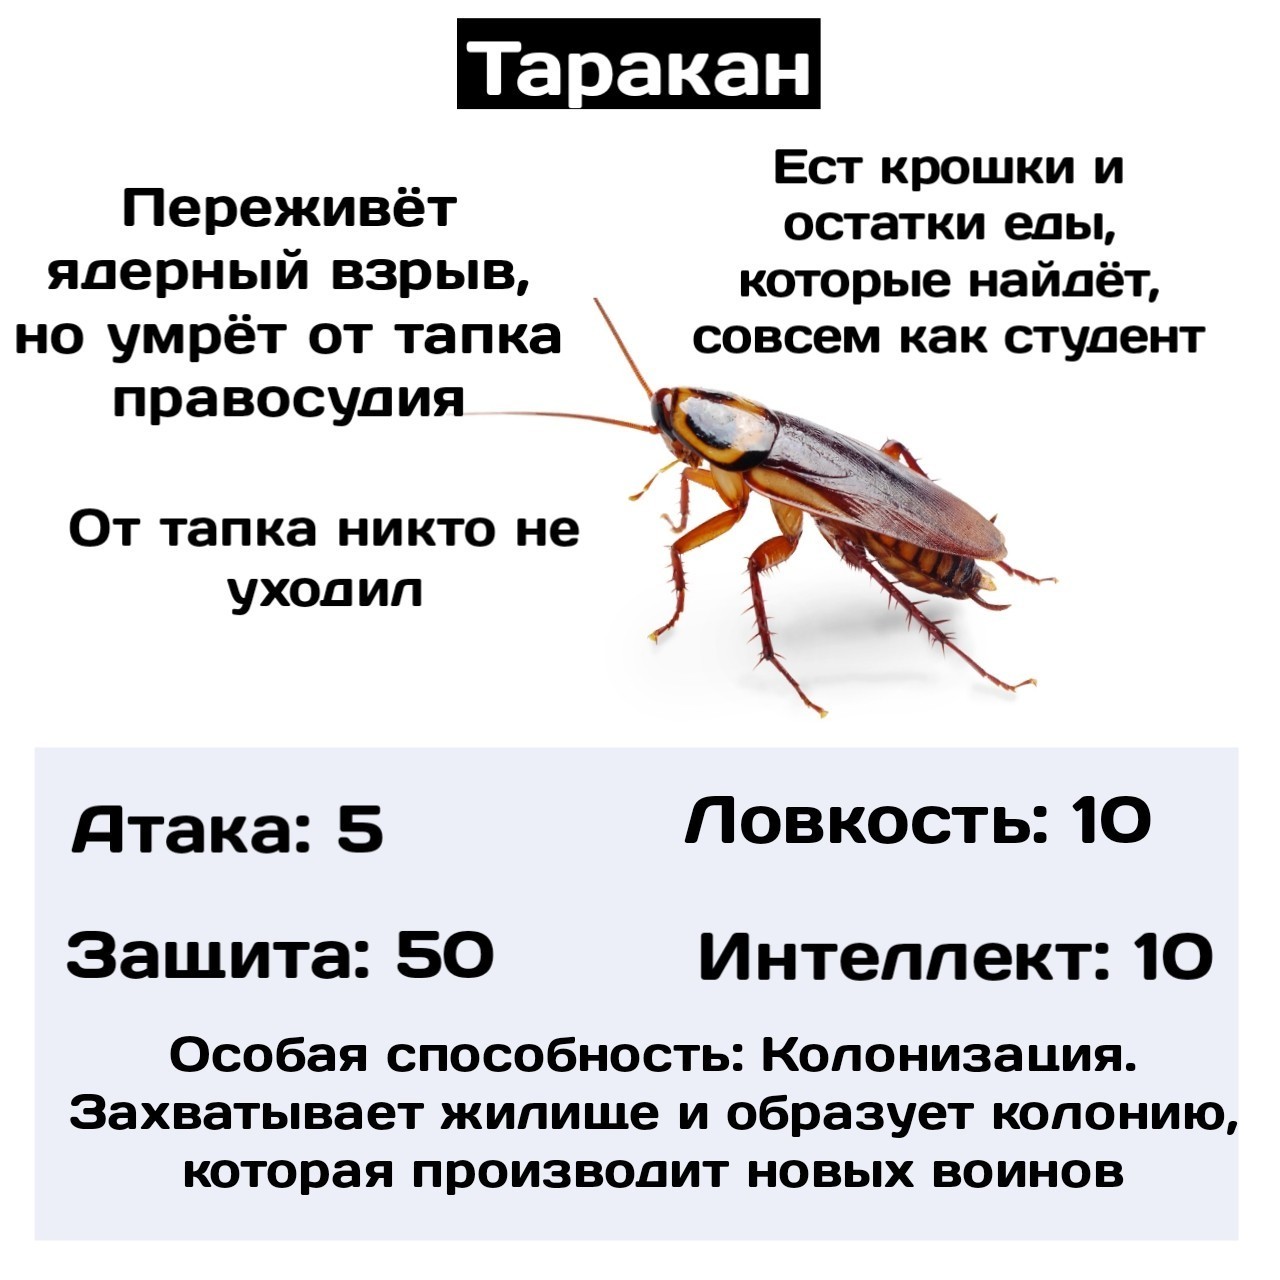 Как призвать тараканов